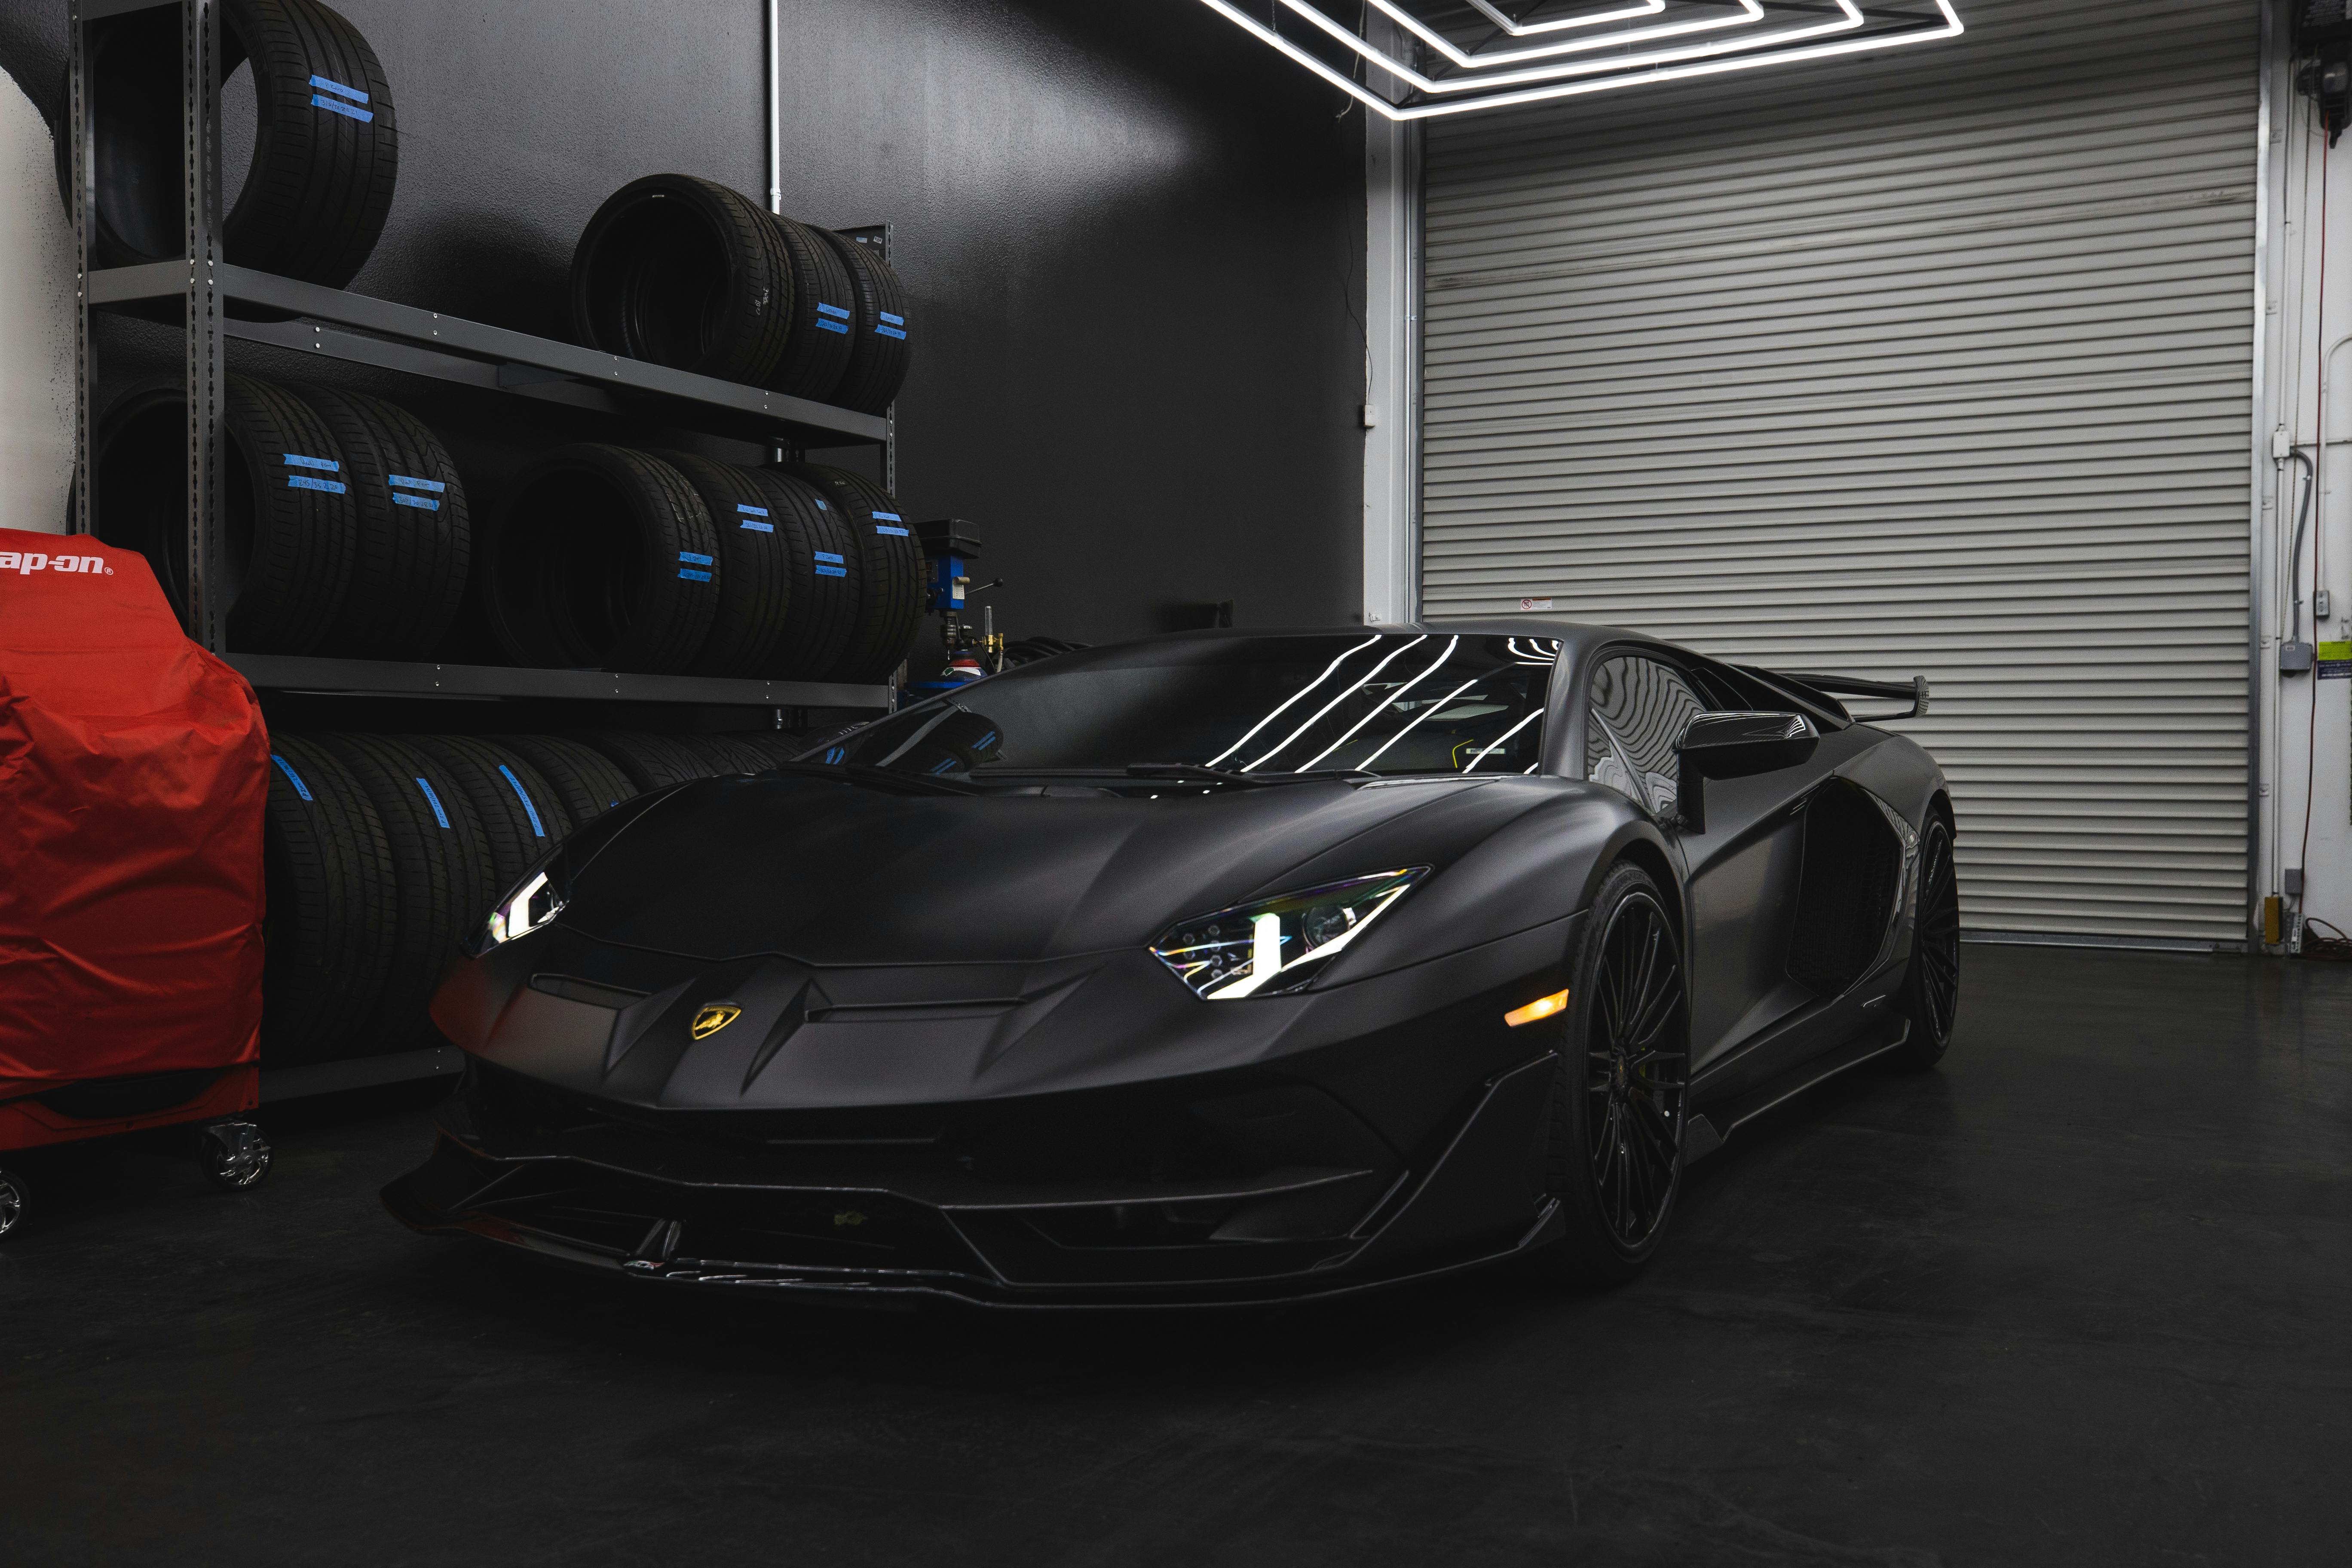 Black Lamborghini Aventador in a Garage · Free Stock Photo